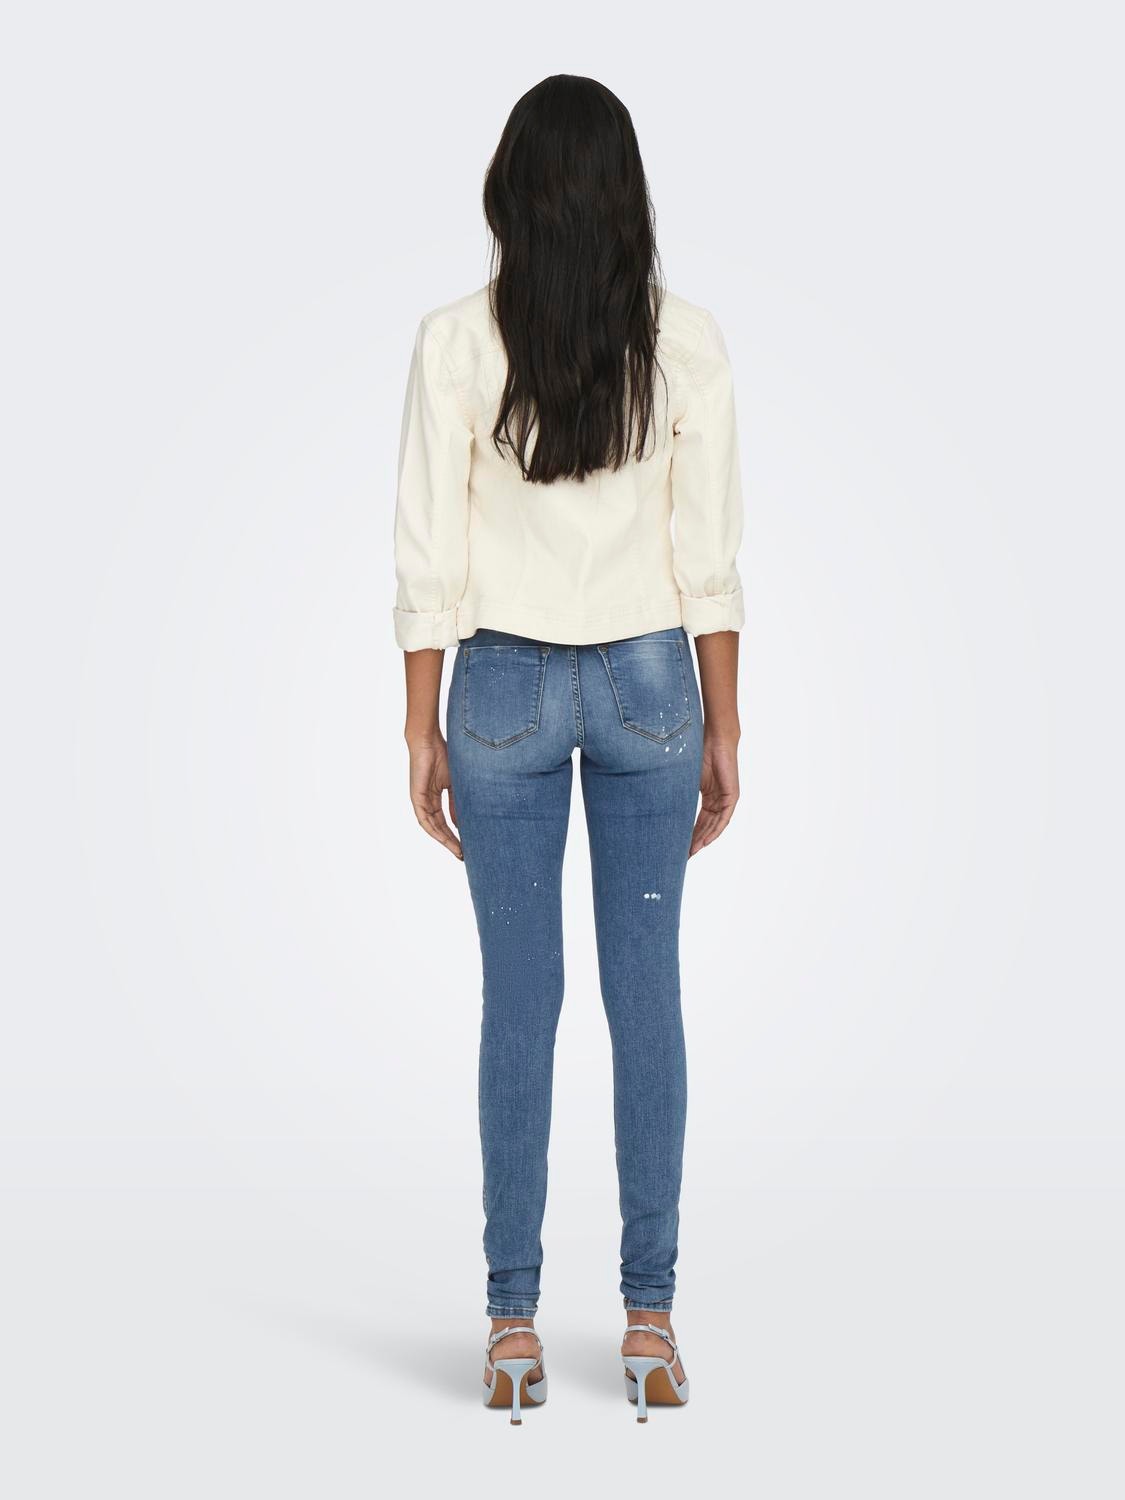 ONLY Skinny Fit Destroyed hems Jeans -Medium Blue Denim - 15210403